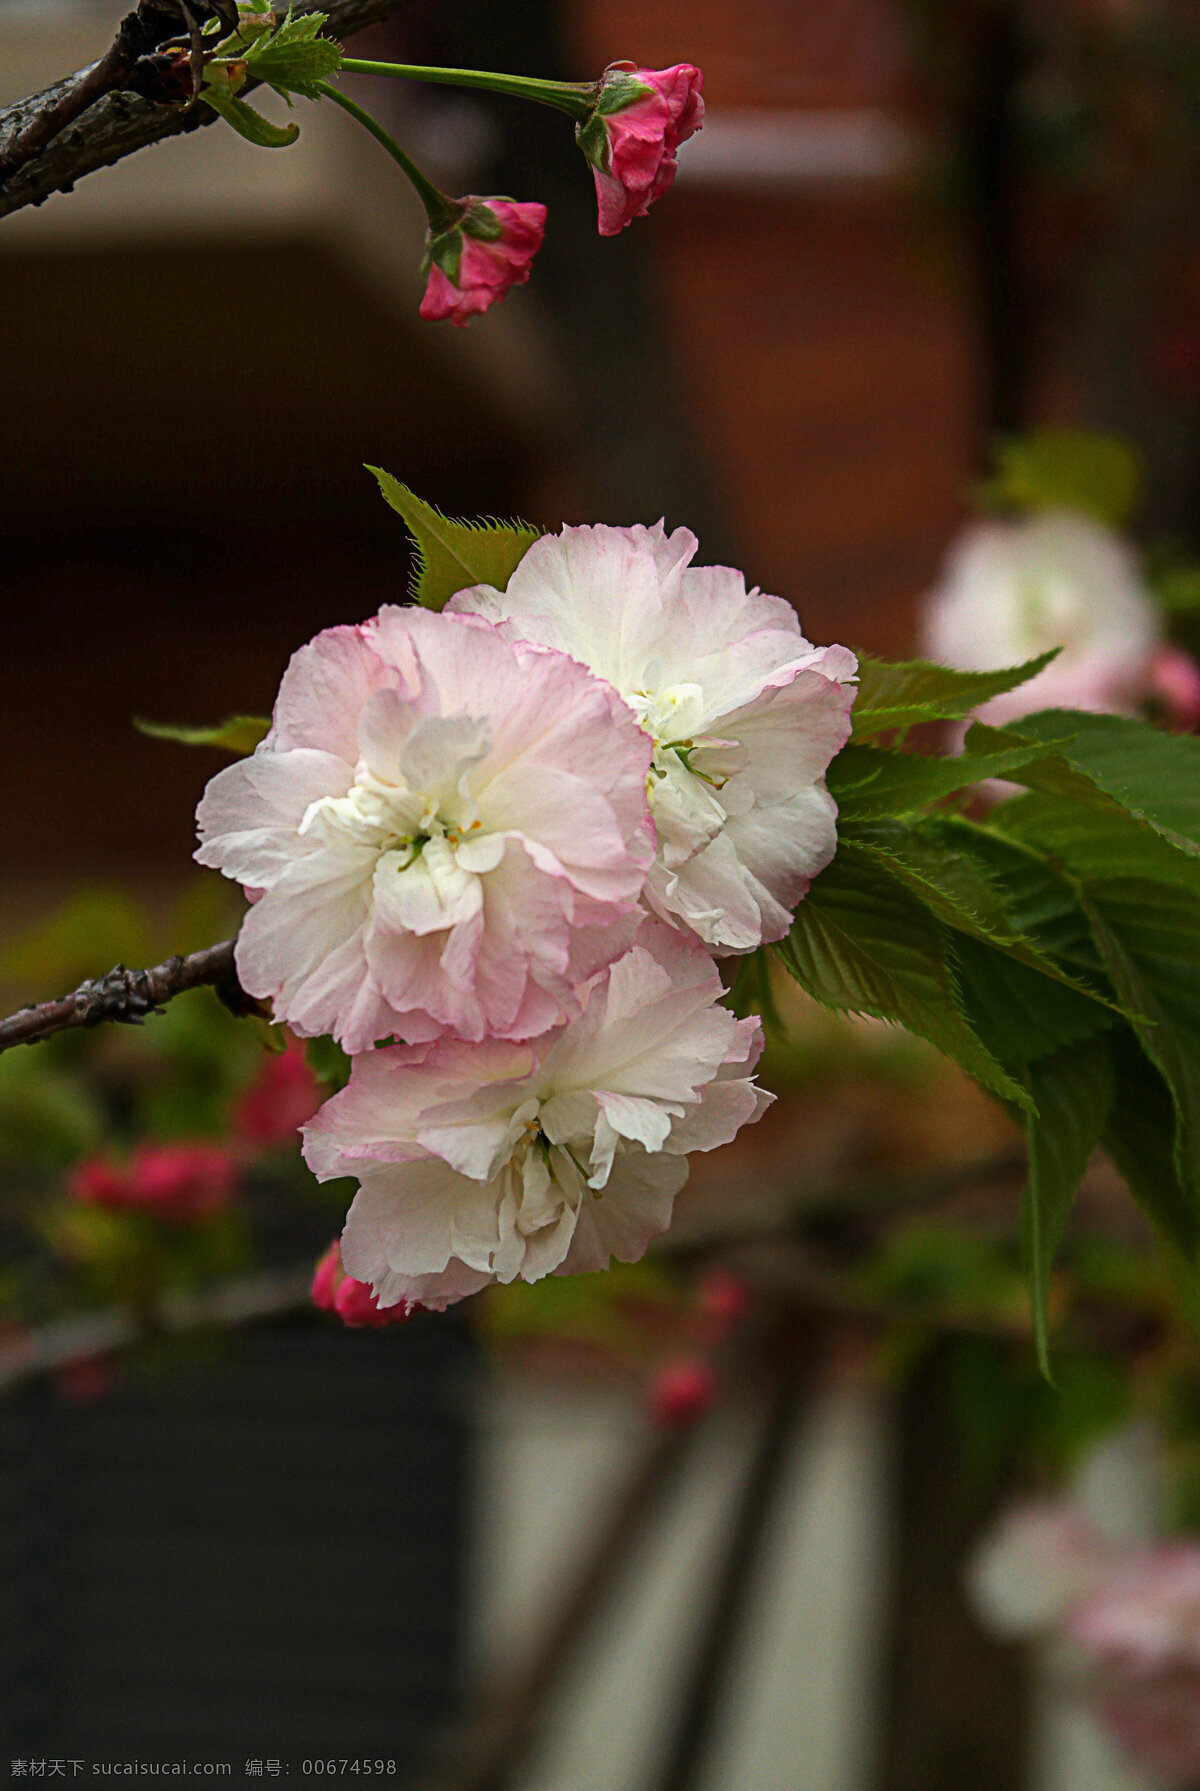 白樱花 樱花 粉色樱花 小区的樱花 亭院的樱花 粉樱花 樱花树 樱花景观 园林 园林景观 生物世界 花草